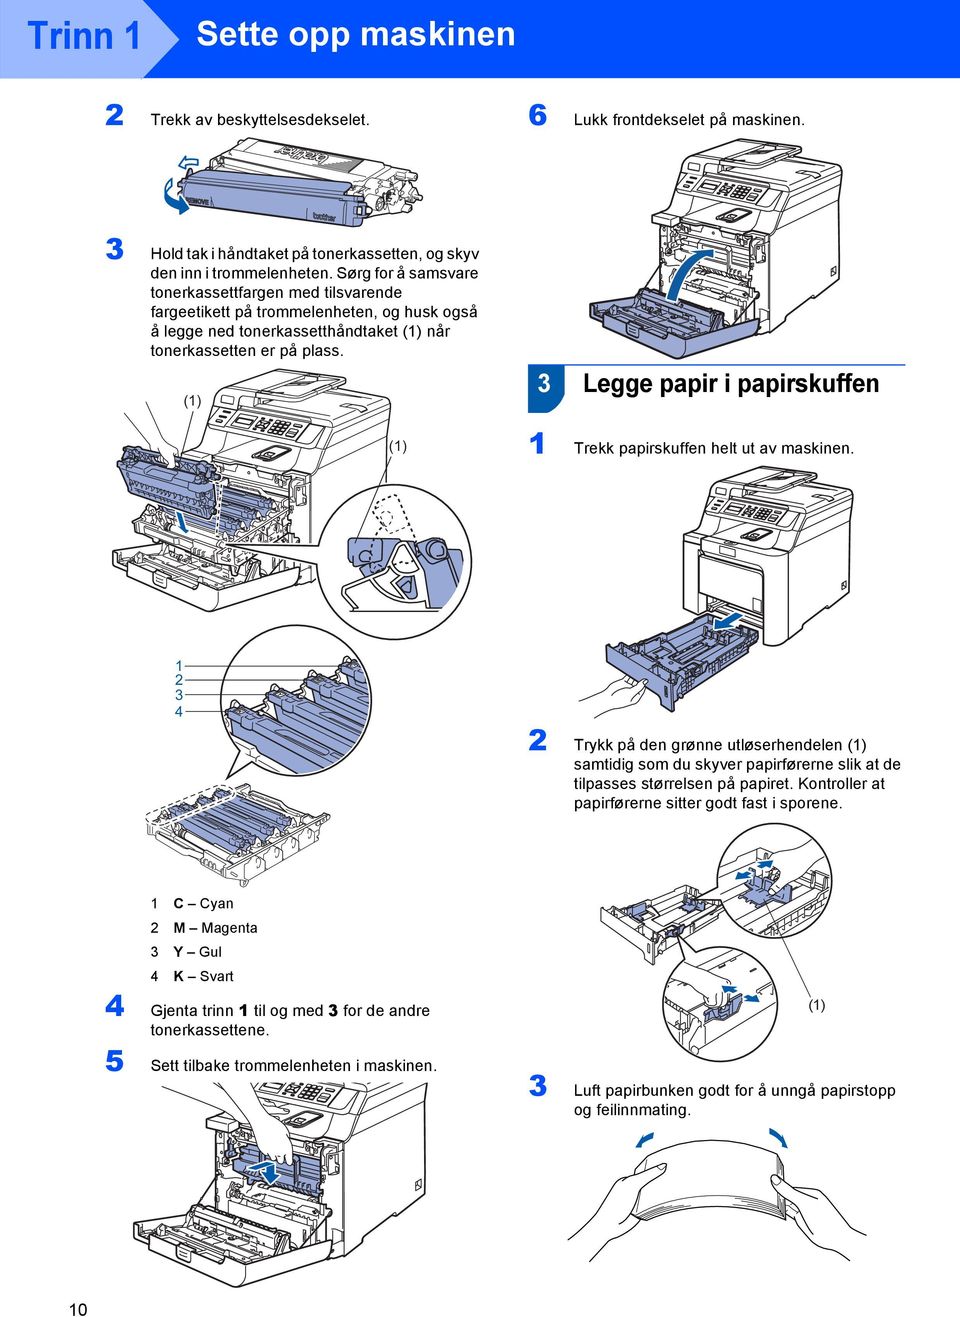 (1) 3 Legge papir i papirskuffen (1) 1 Trekk papirskuffen helt ut av maskinen.